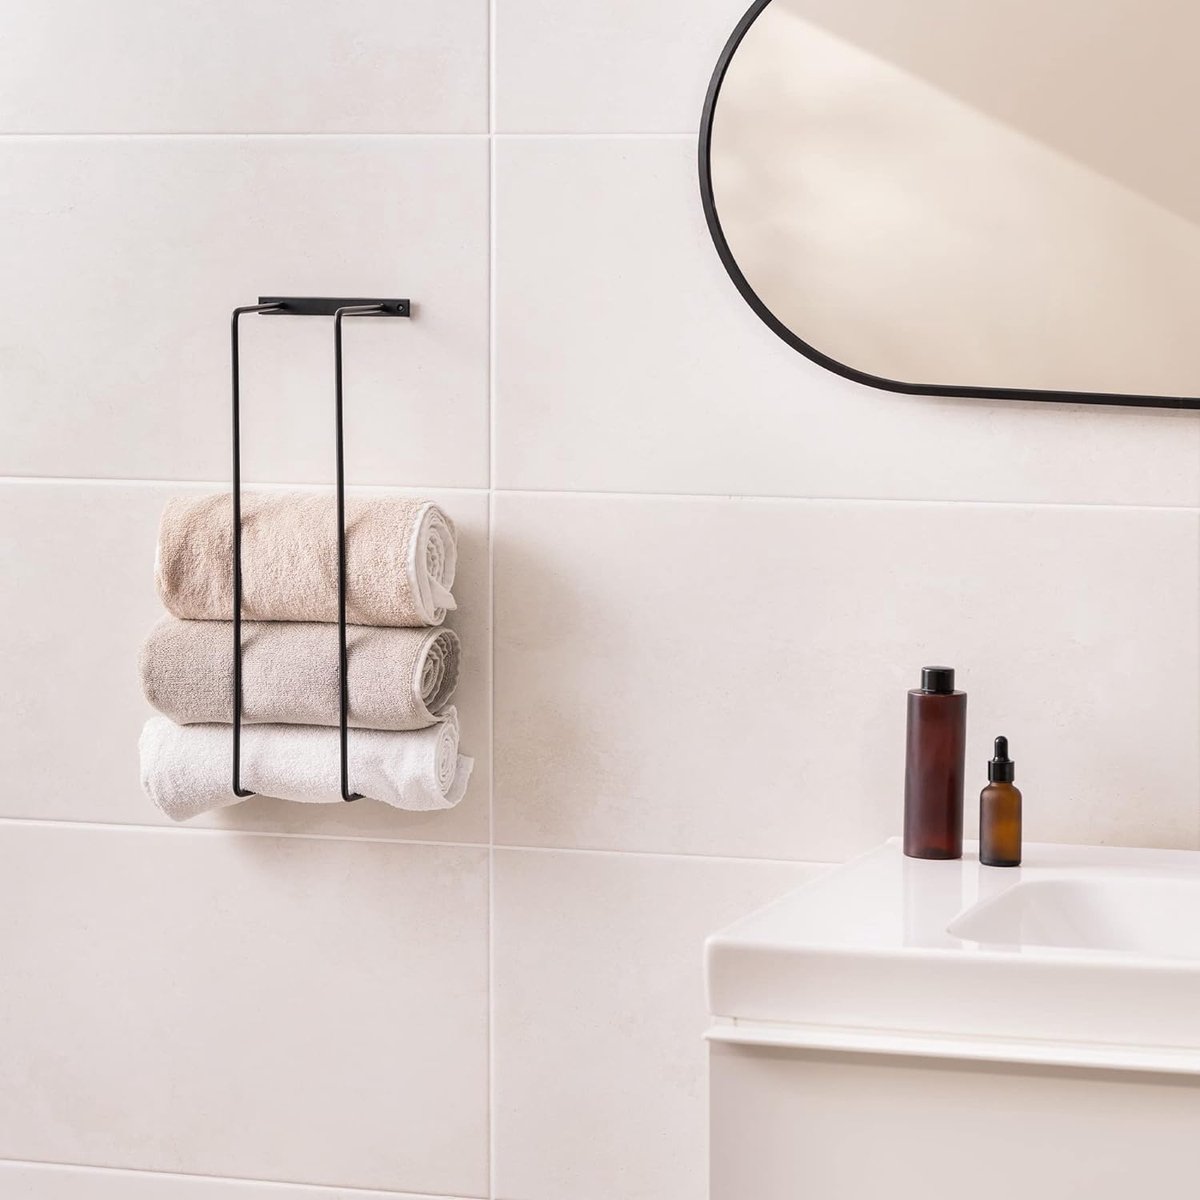 Handdoekenrek met twee stangen - Handdoekhouder om op te hangen - Voor badkamer of keuken - Zwart